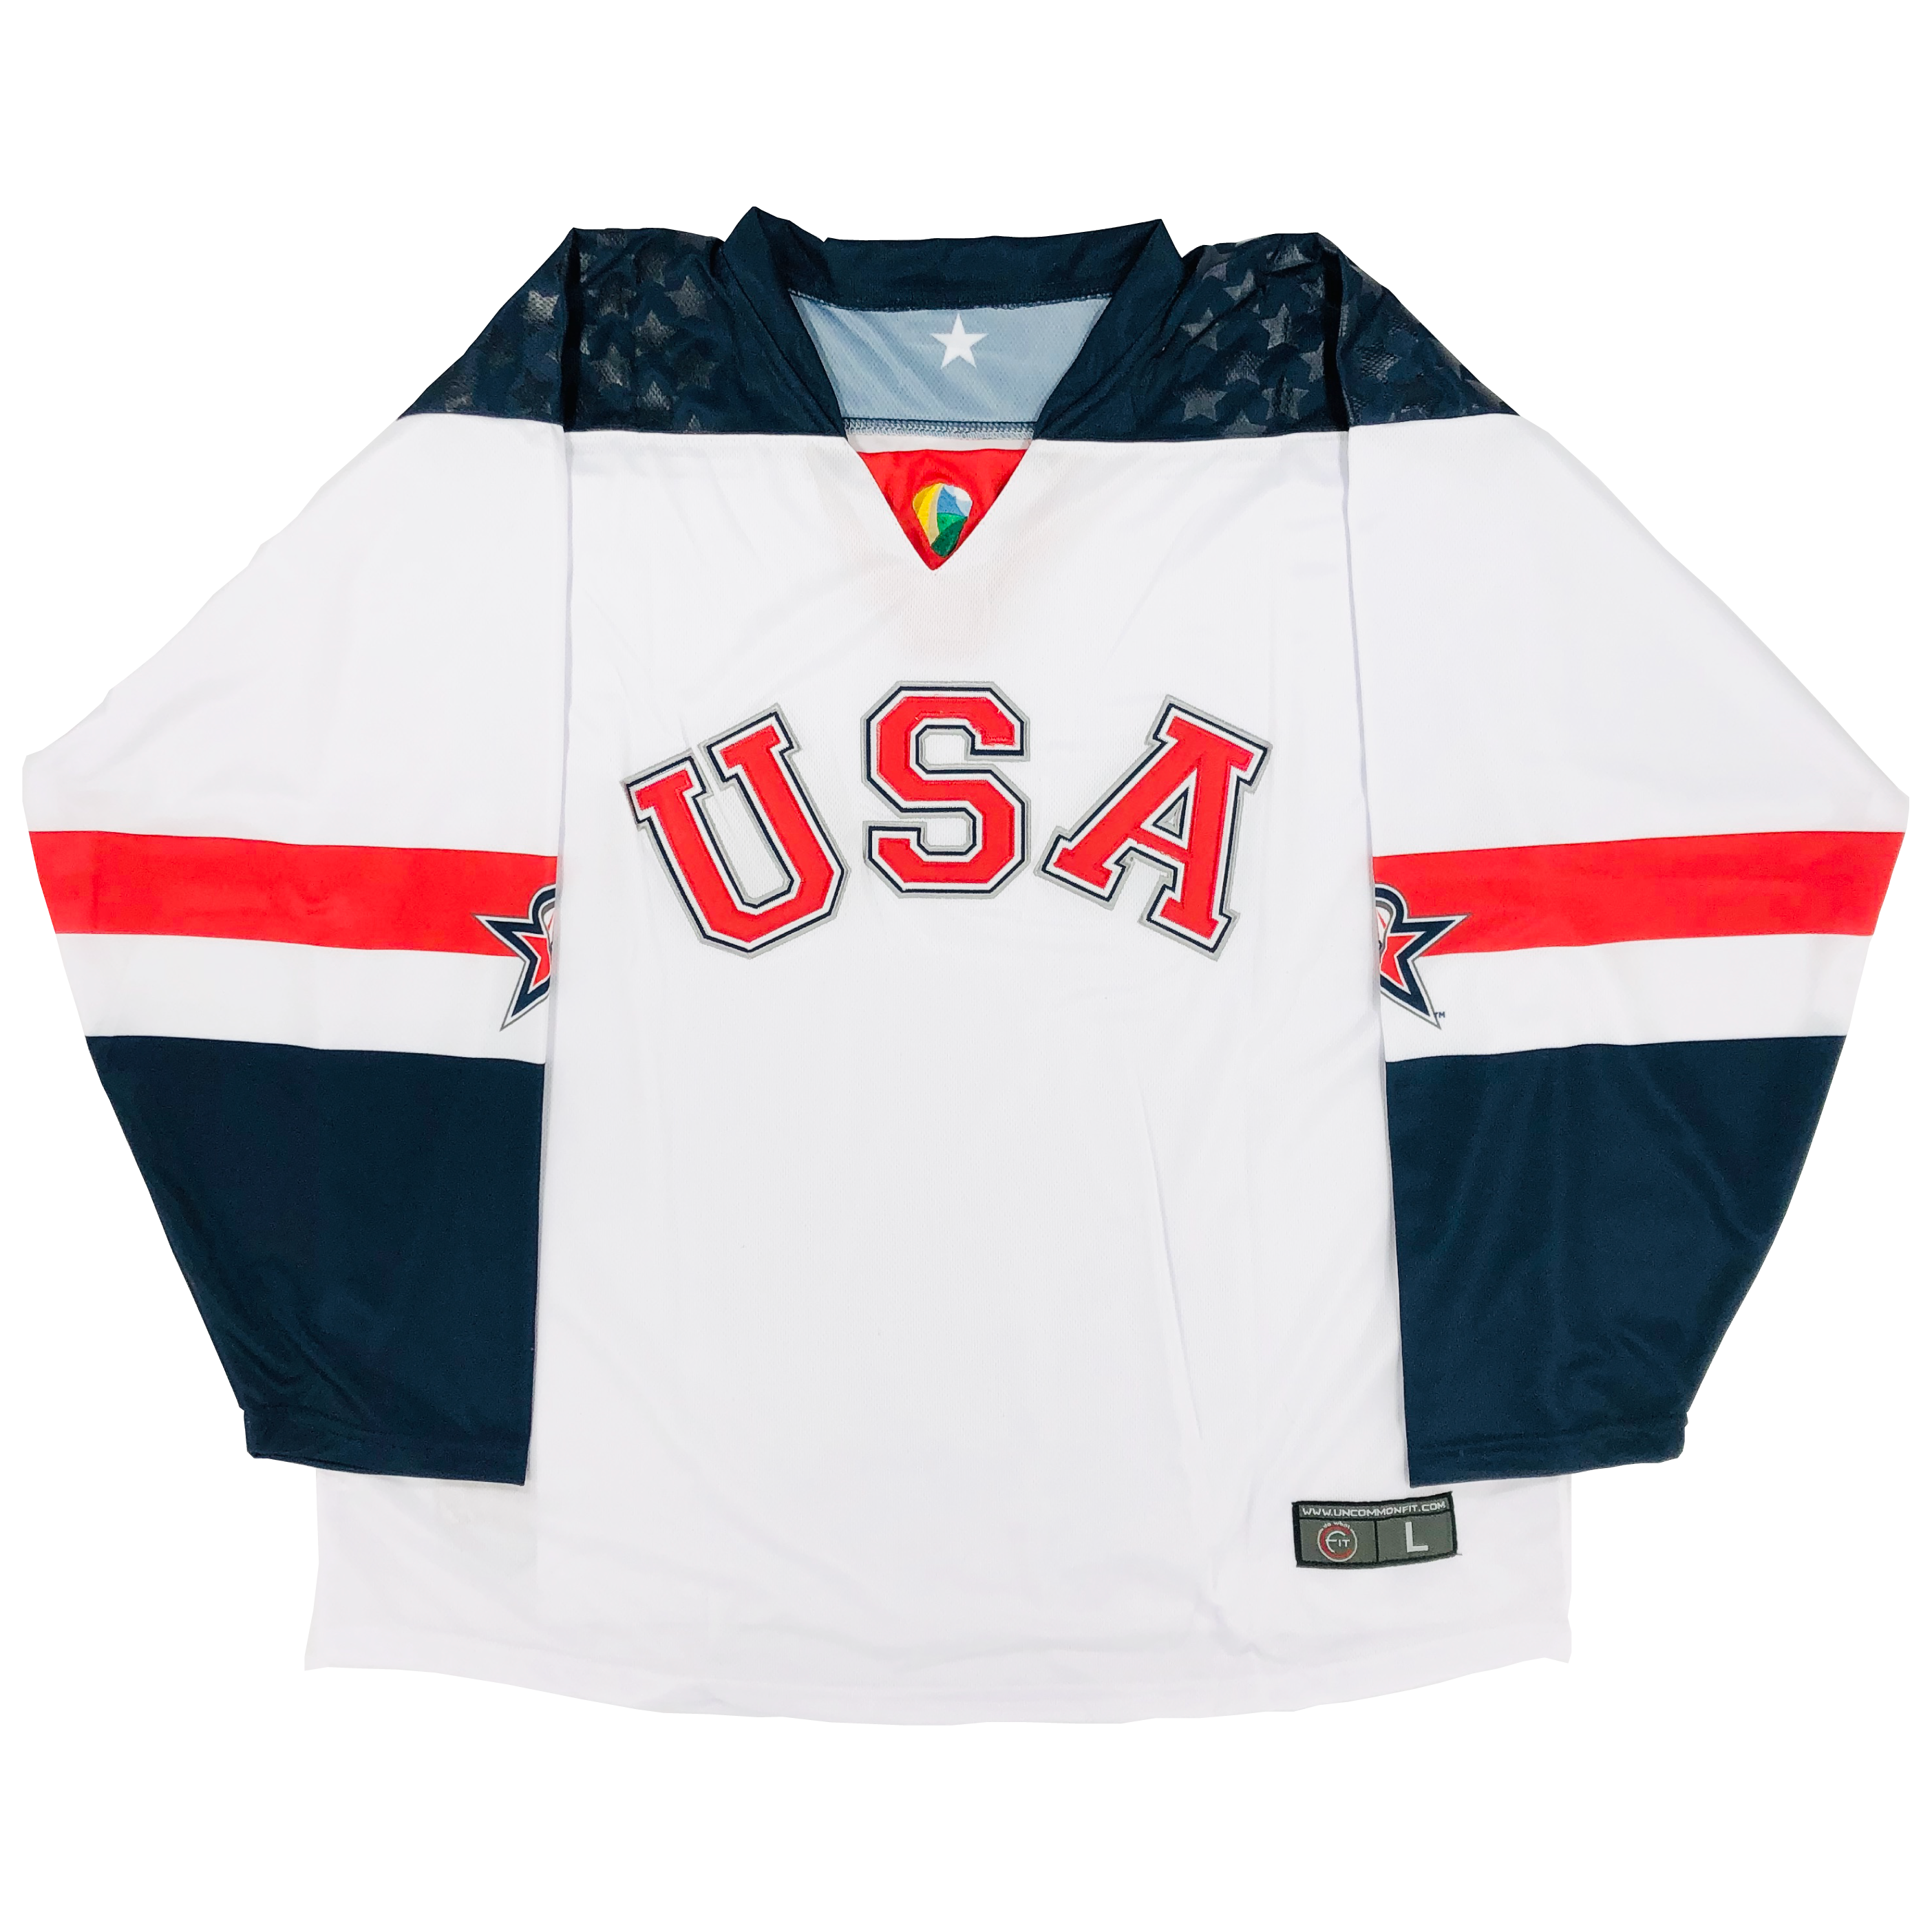 International Hockey Jerseys, Vintage Hockey Gear